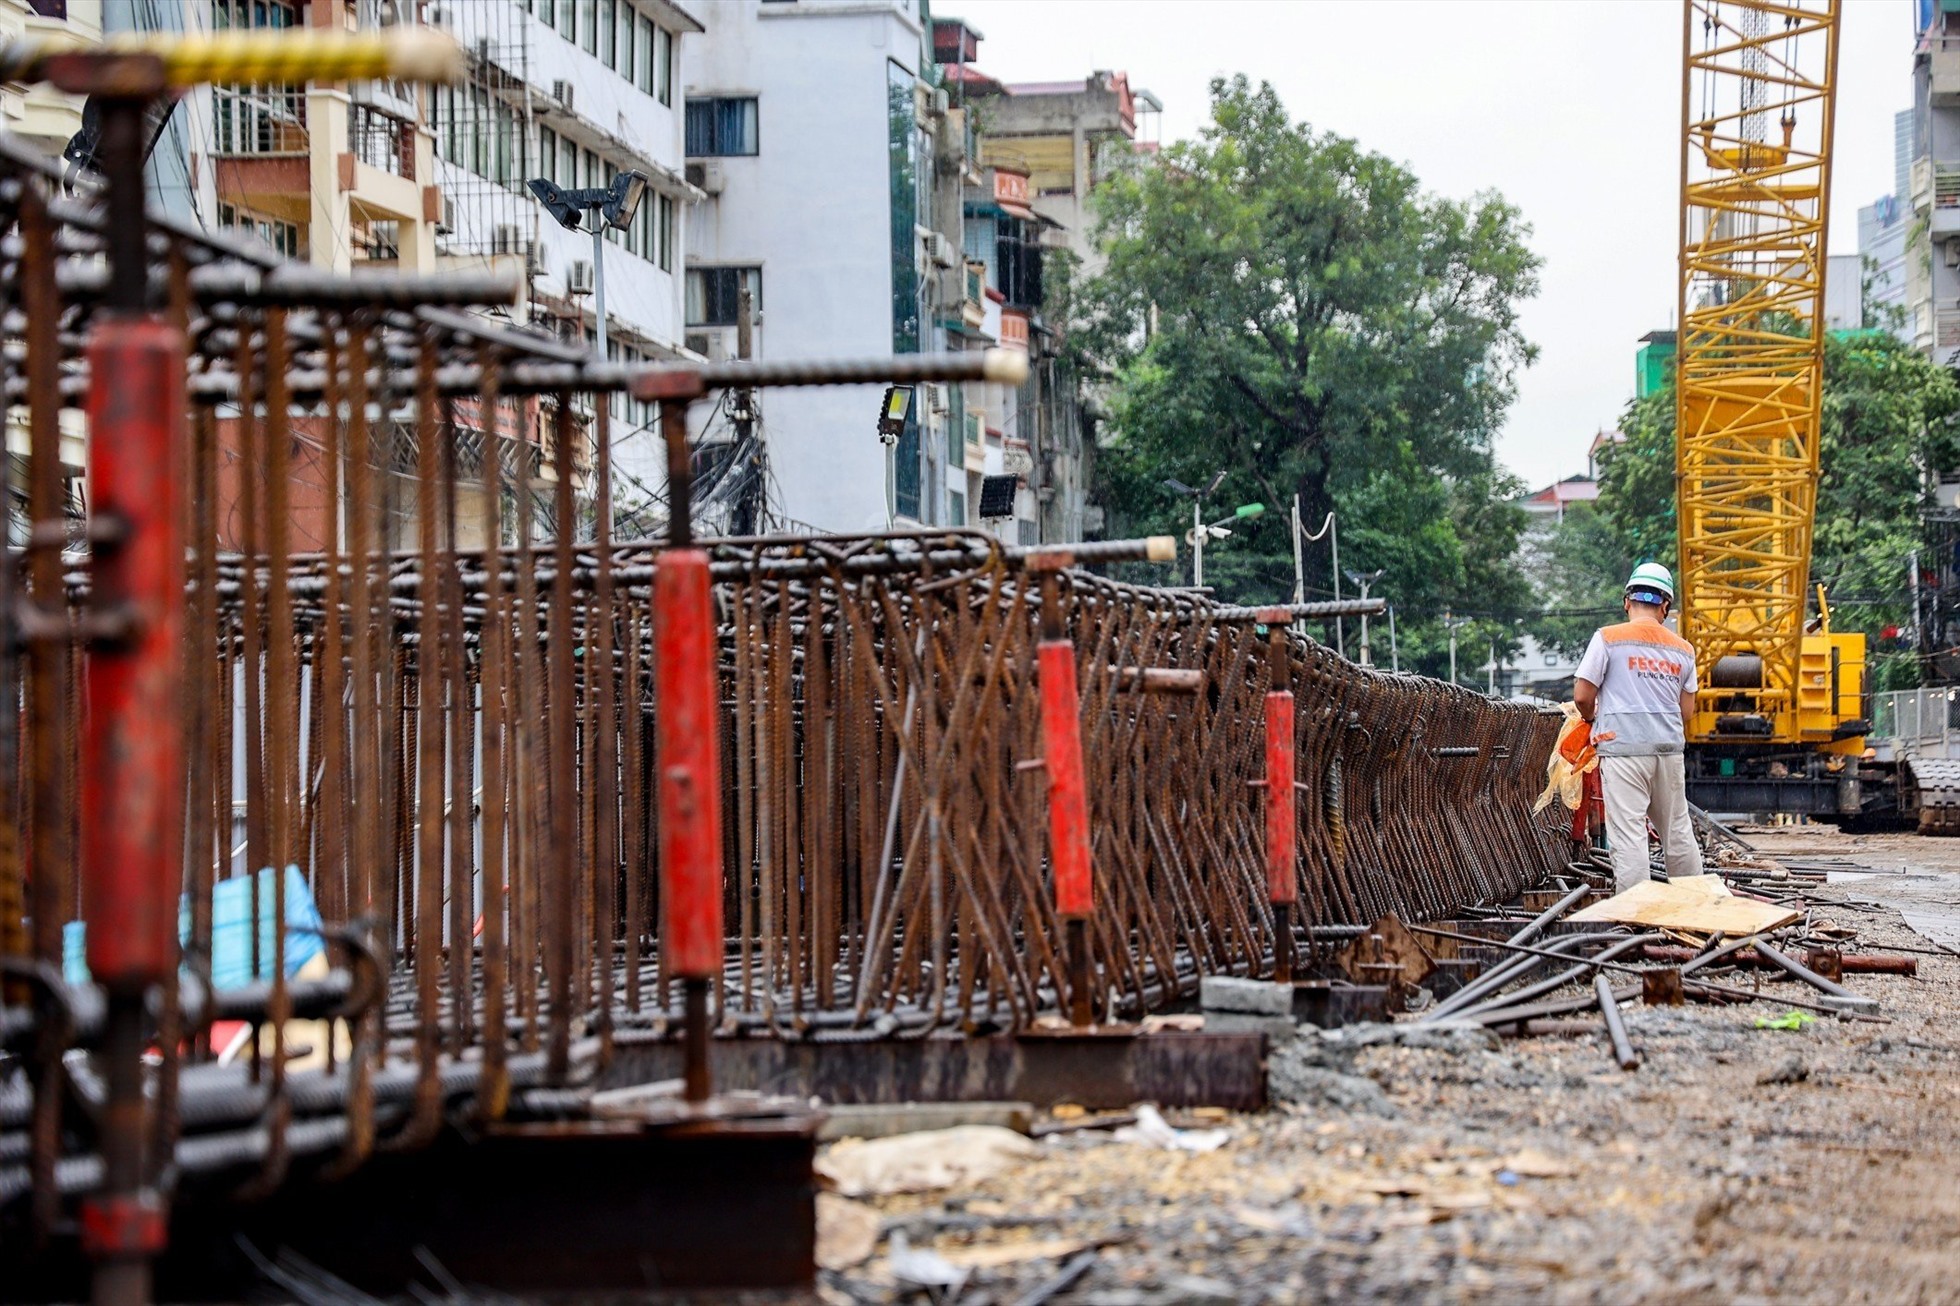 Tính đến thời điểm hiện tại, tiến độ tổng thể chung của Dự án Tuyến đường sắt đô thị thí điểm thành phố Hà Nội, đoạn Nhổn - ga Hà Nội đạt 76,5%, trong đó tiến độ thi công đoạn trên cao đạt 99%. Các ga ngầm tiếp tục được khẩn trương thi công.